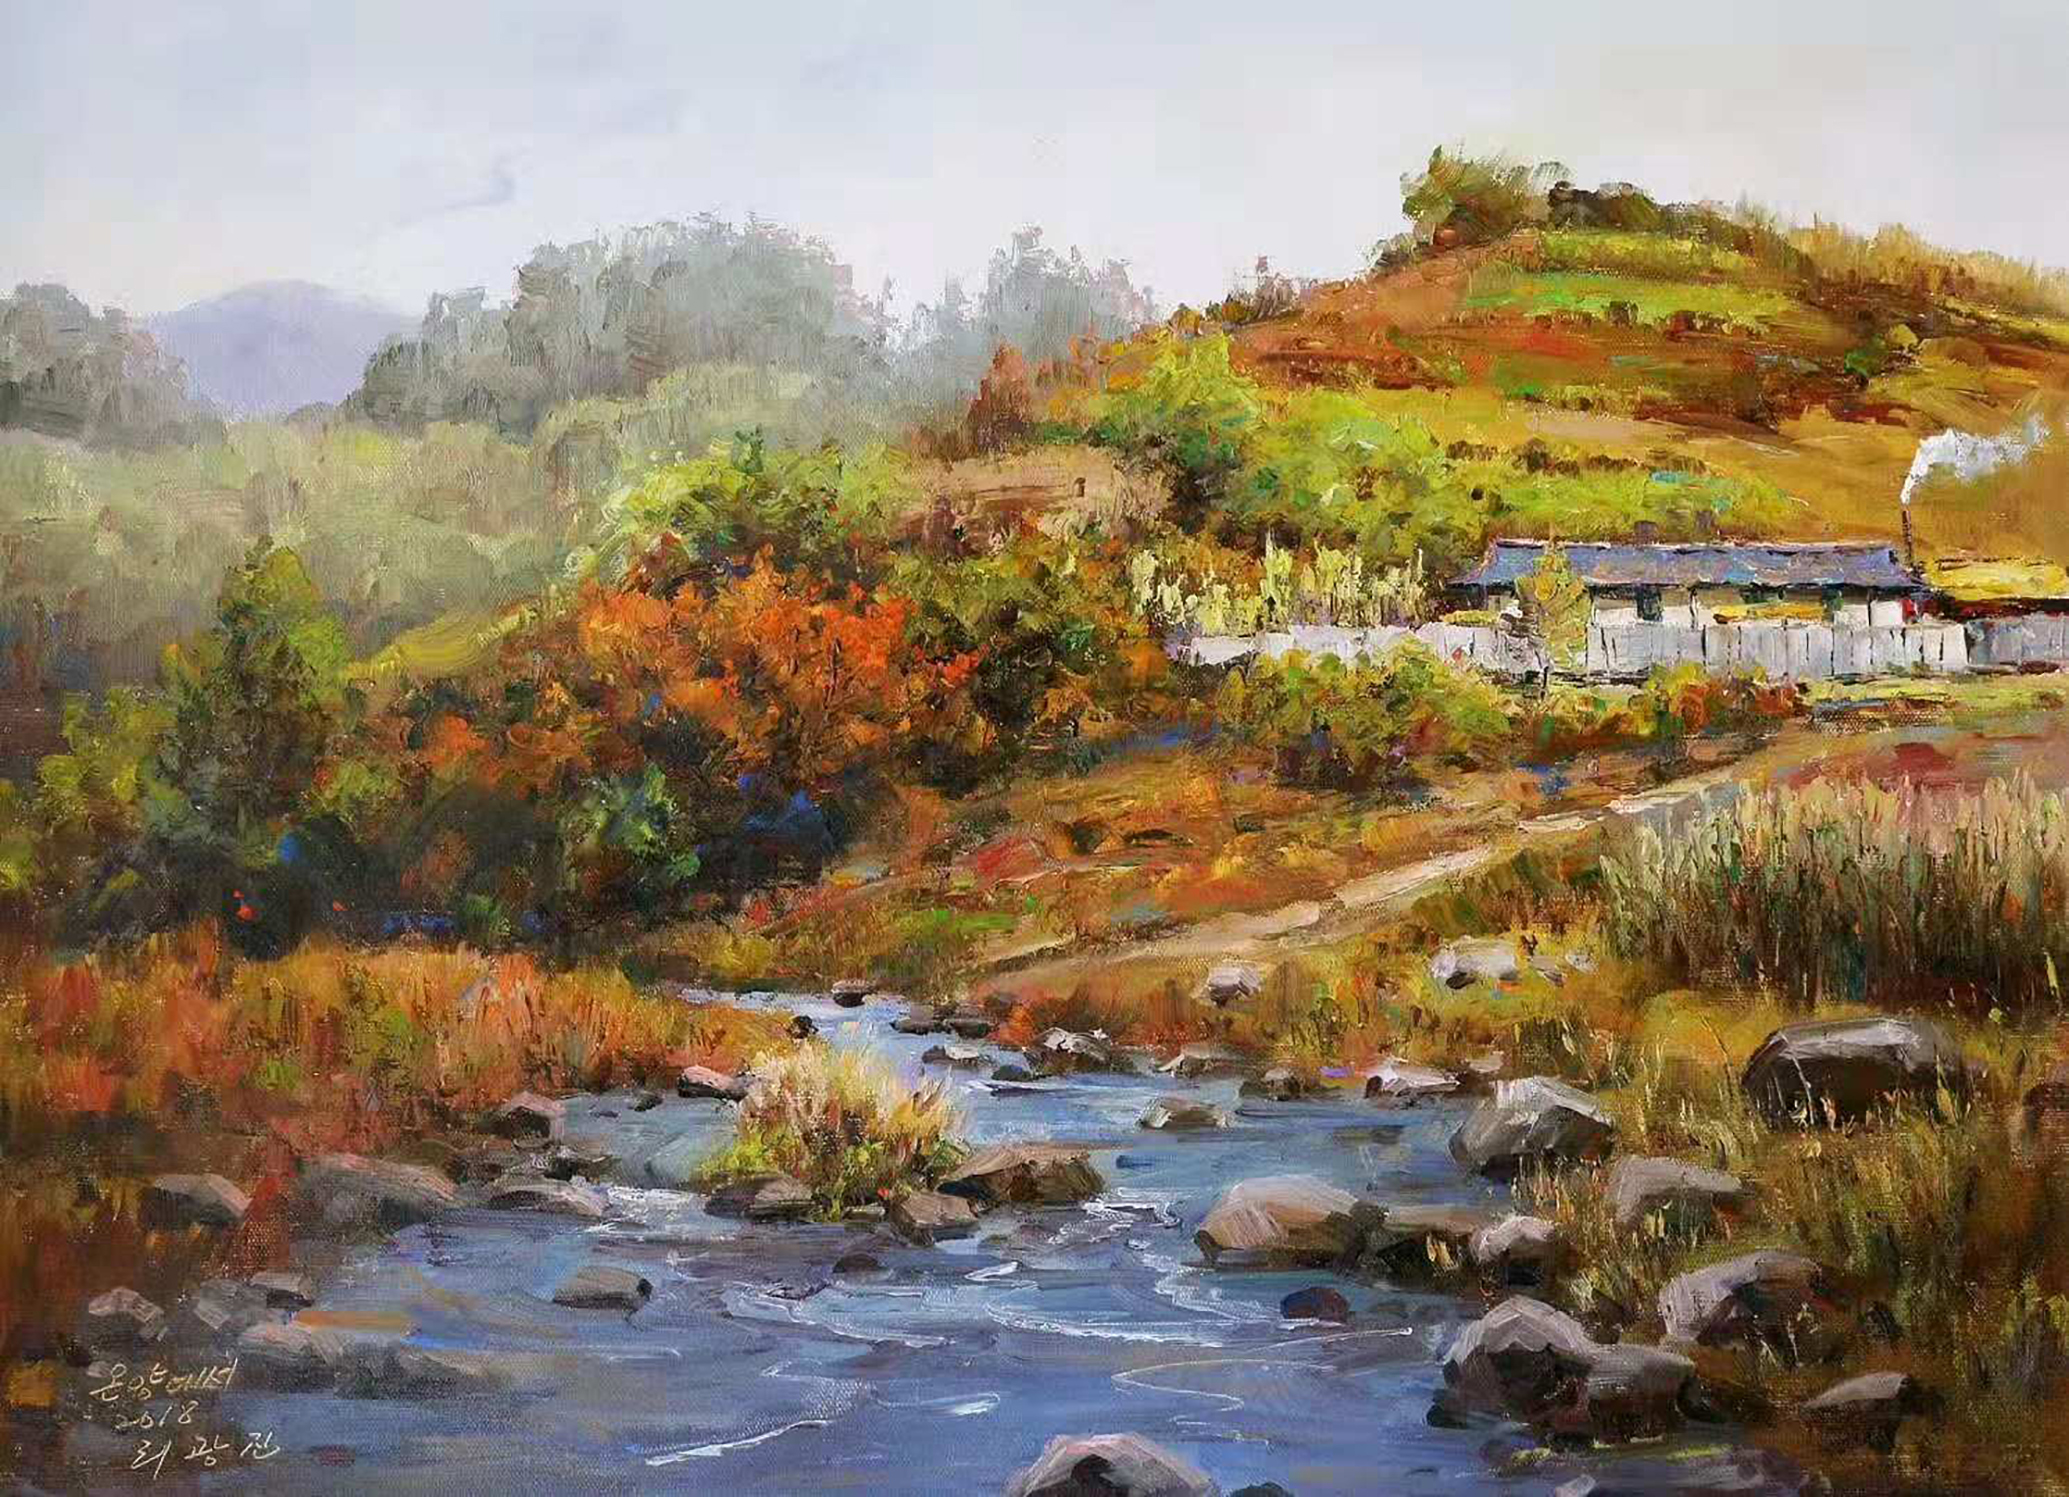 油画风景欣赏,村边潺潺流水的小溪流